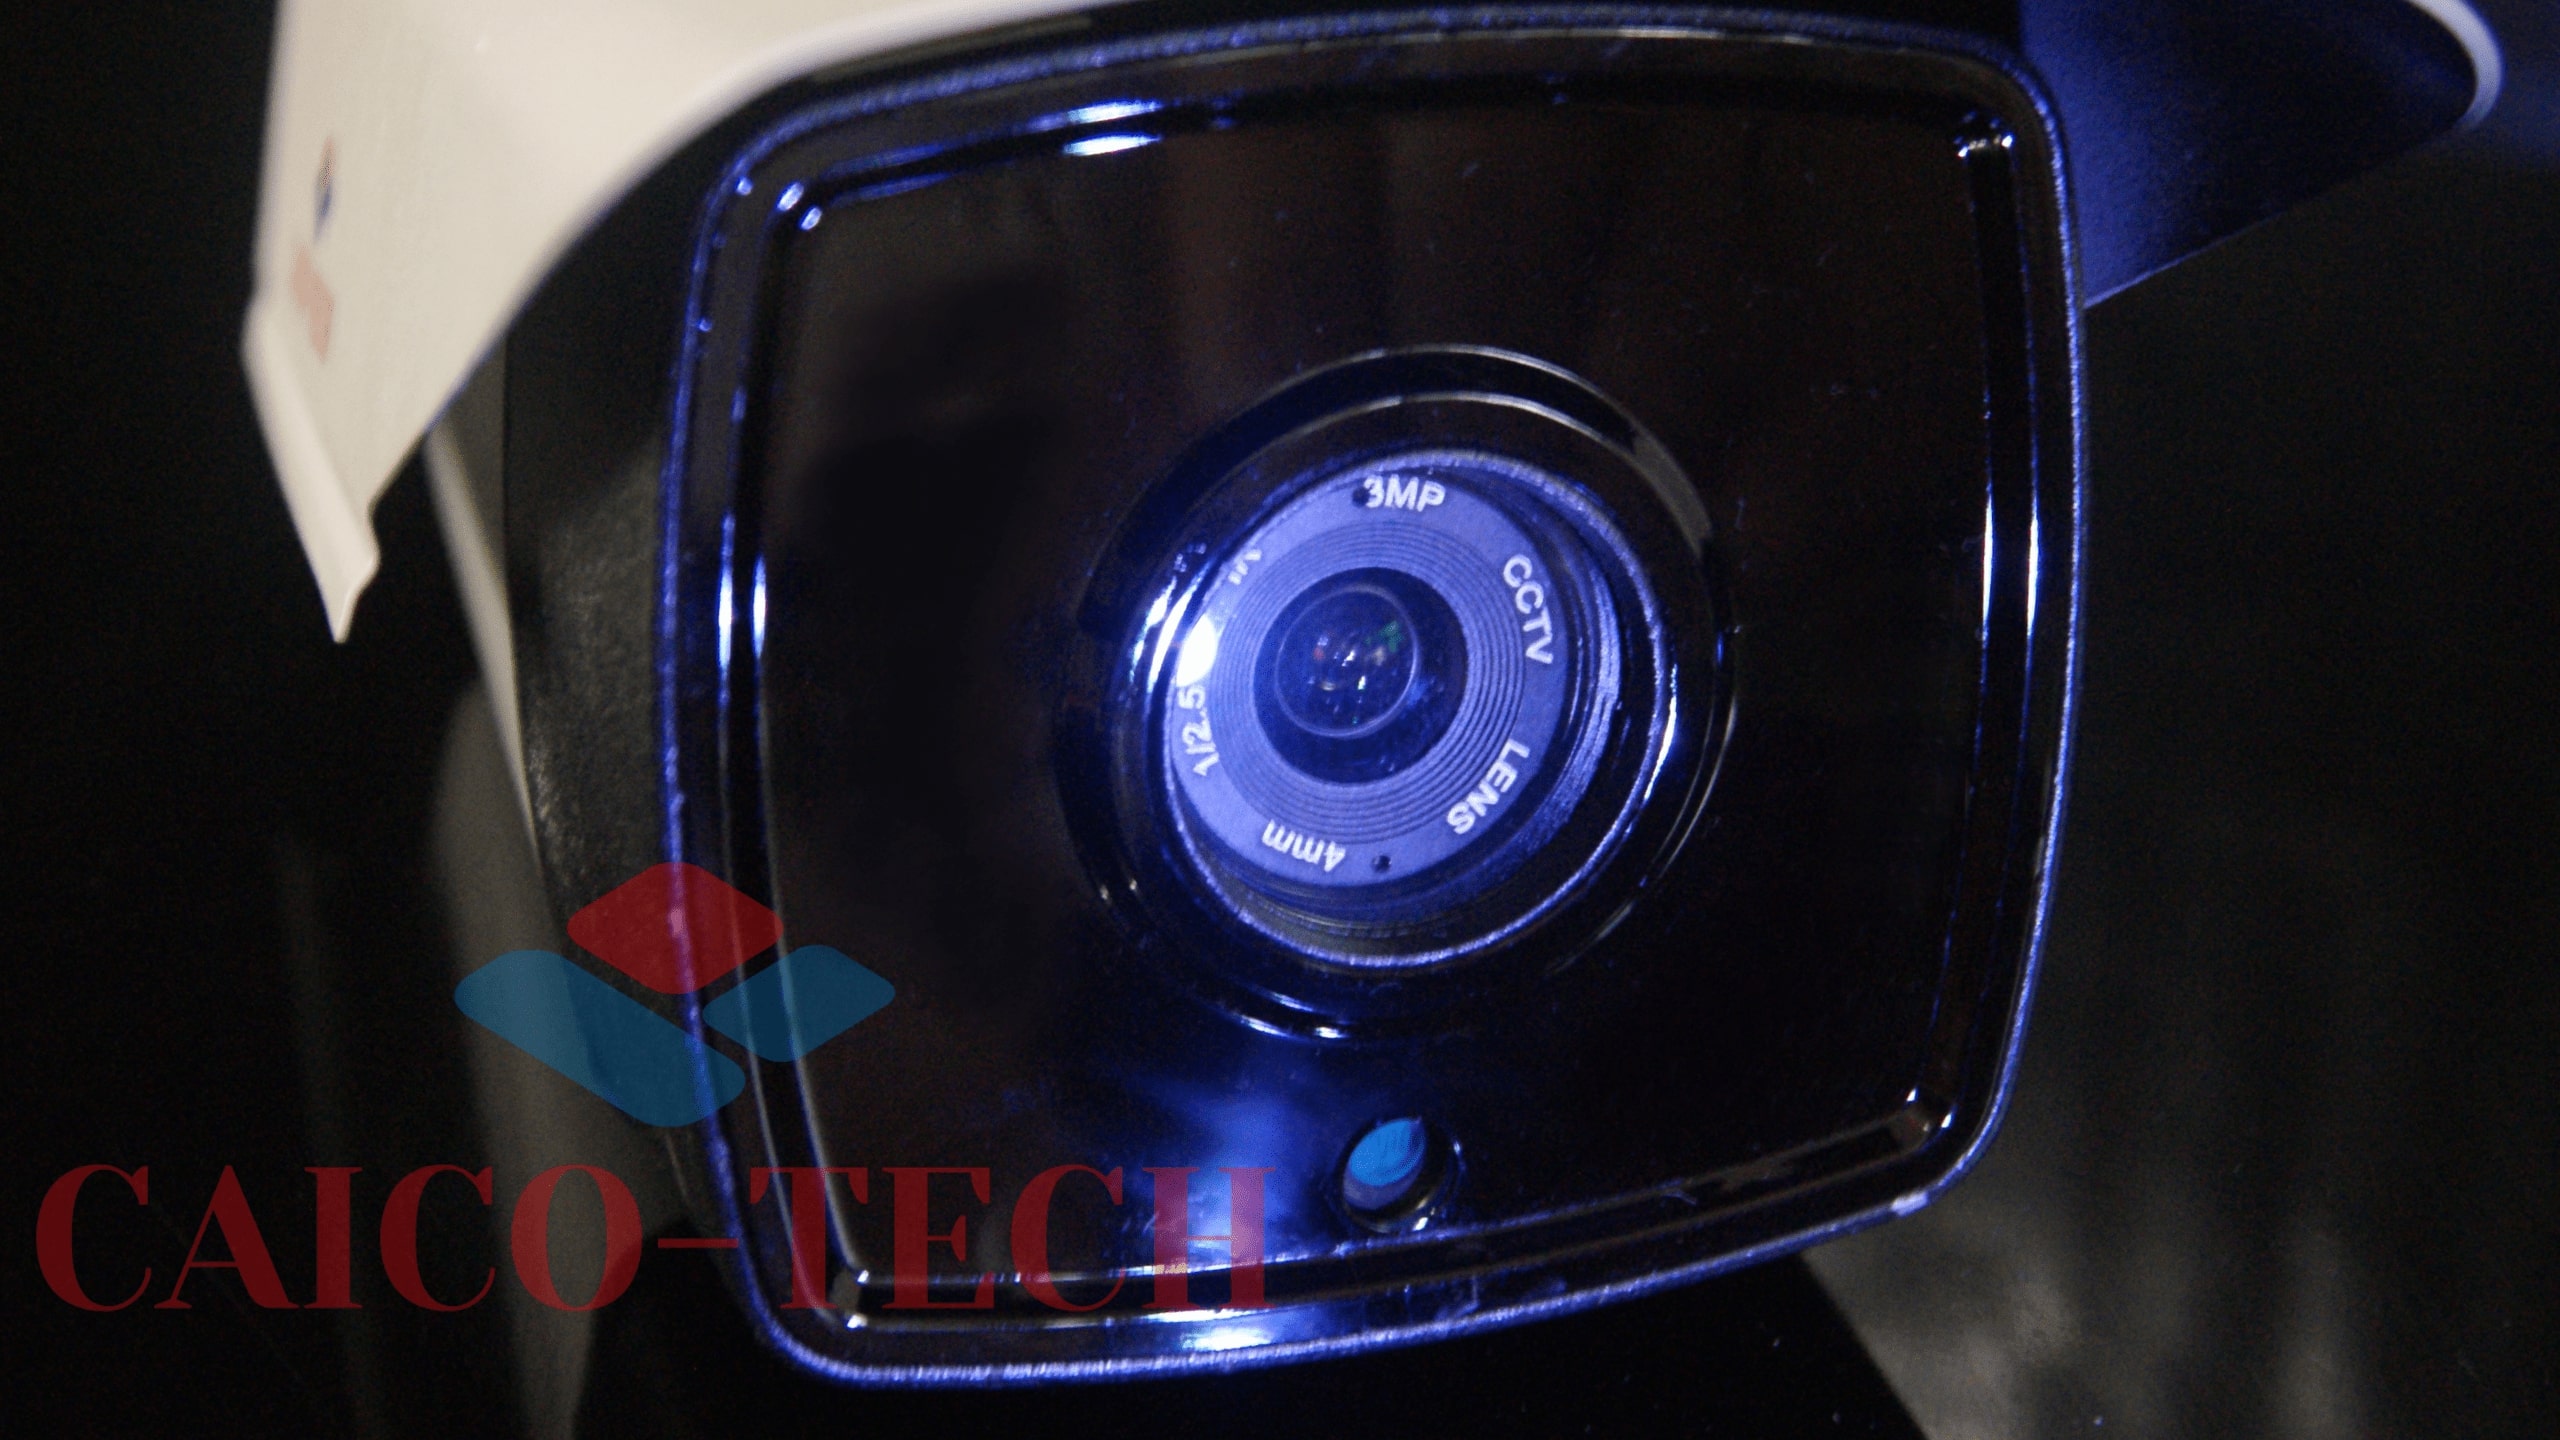  % мп видеокамеры наблюдения CAICO TECH высокого разрешения описание